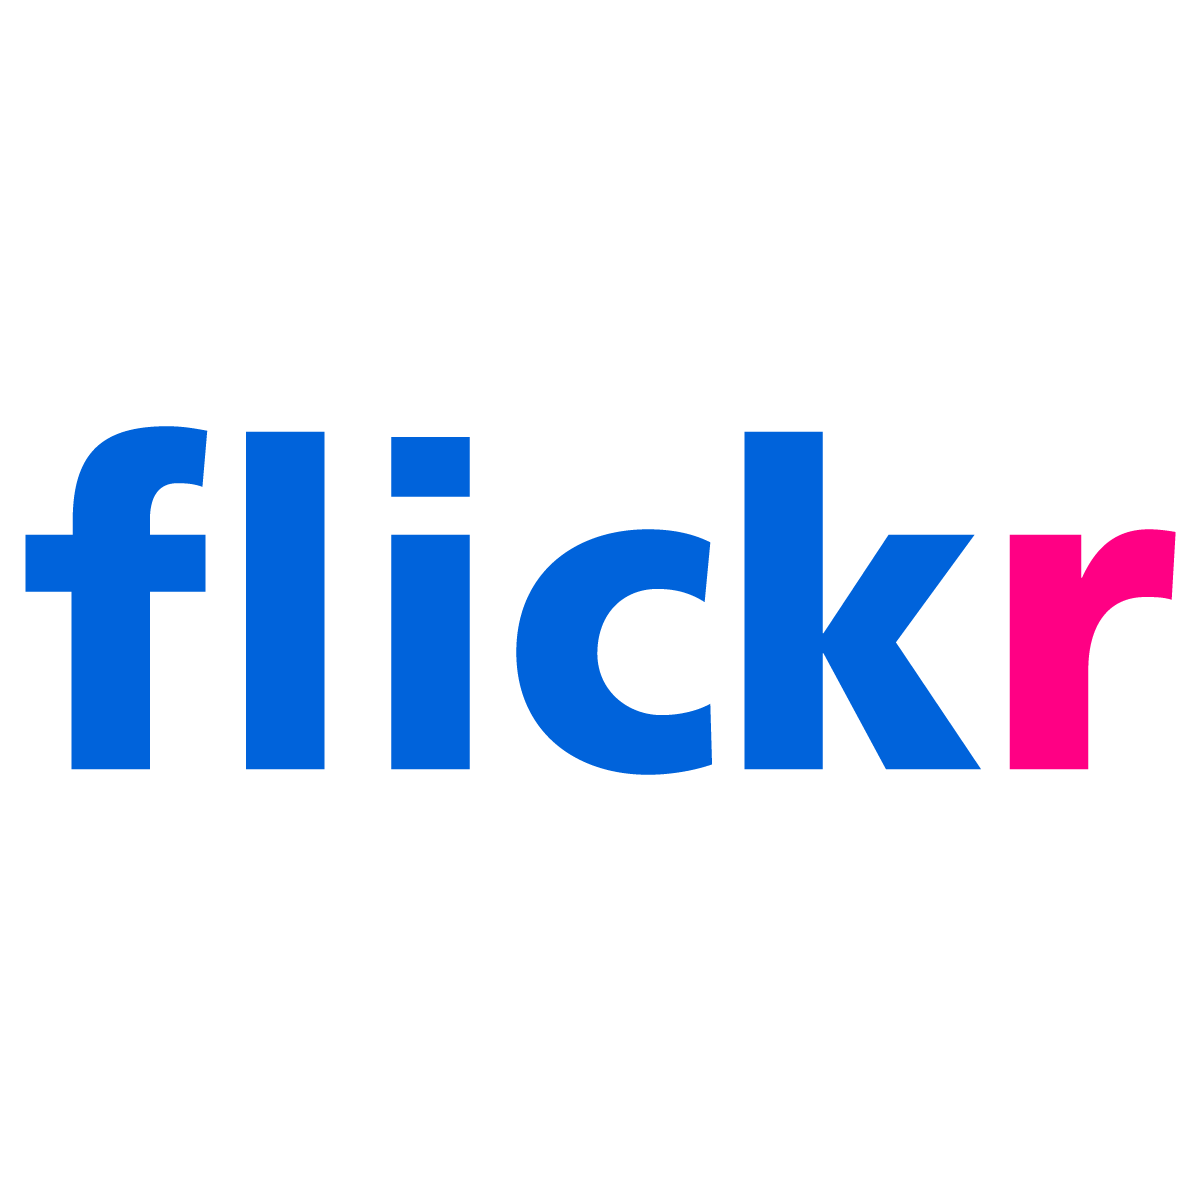 Logotipo de Flickr: Frutiger es un tipo de letra popular y flexible - Imagen